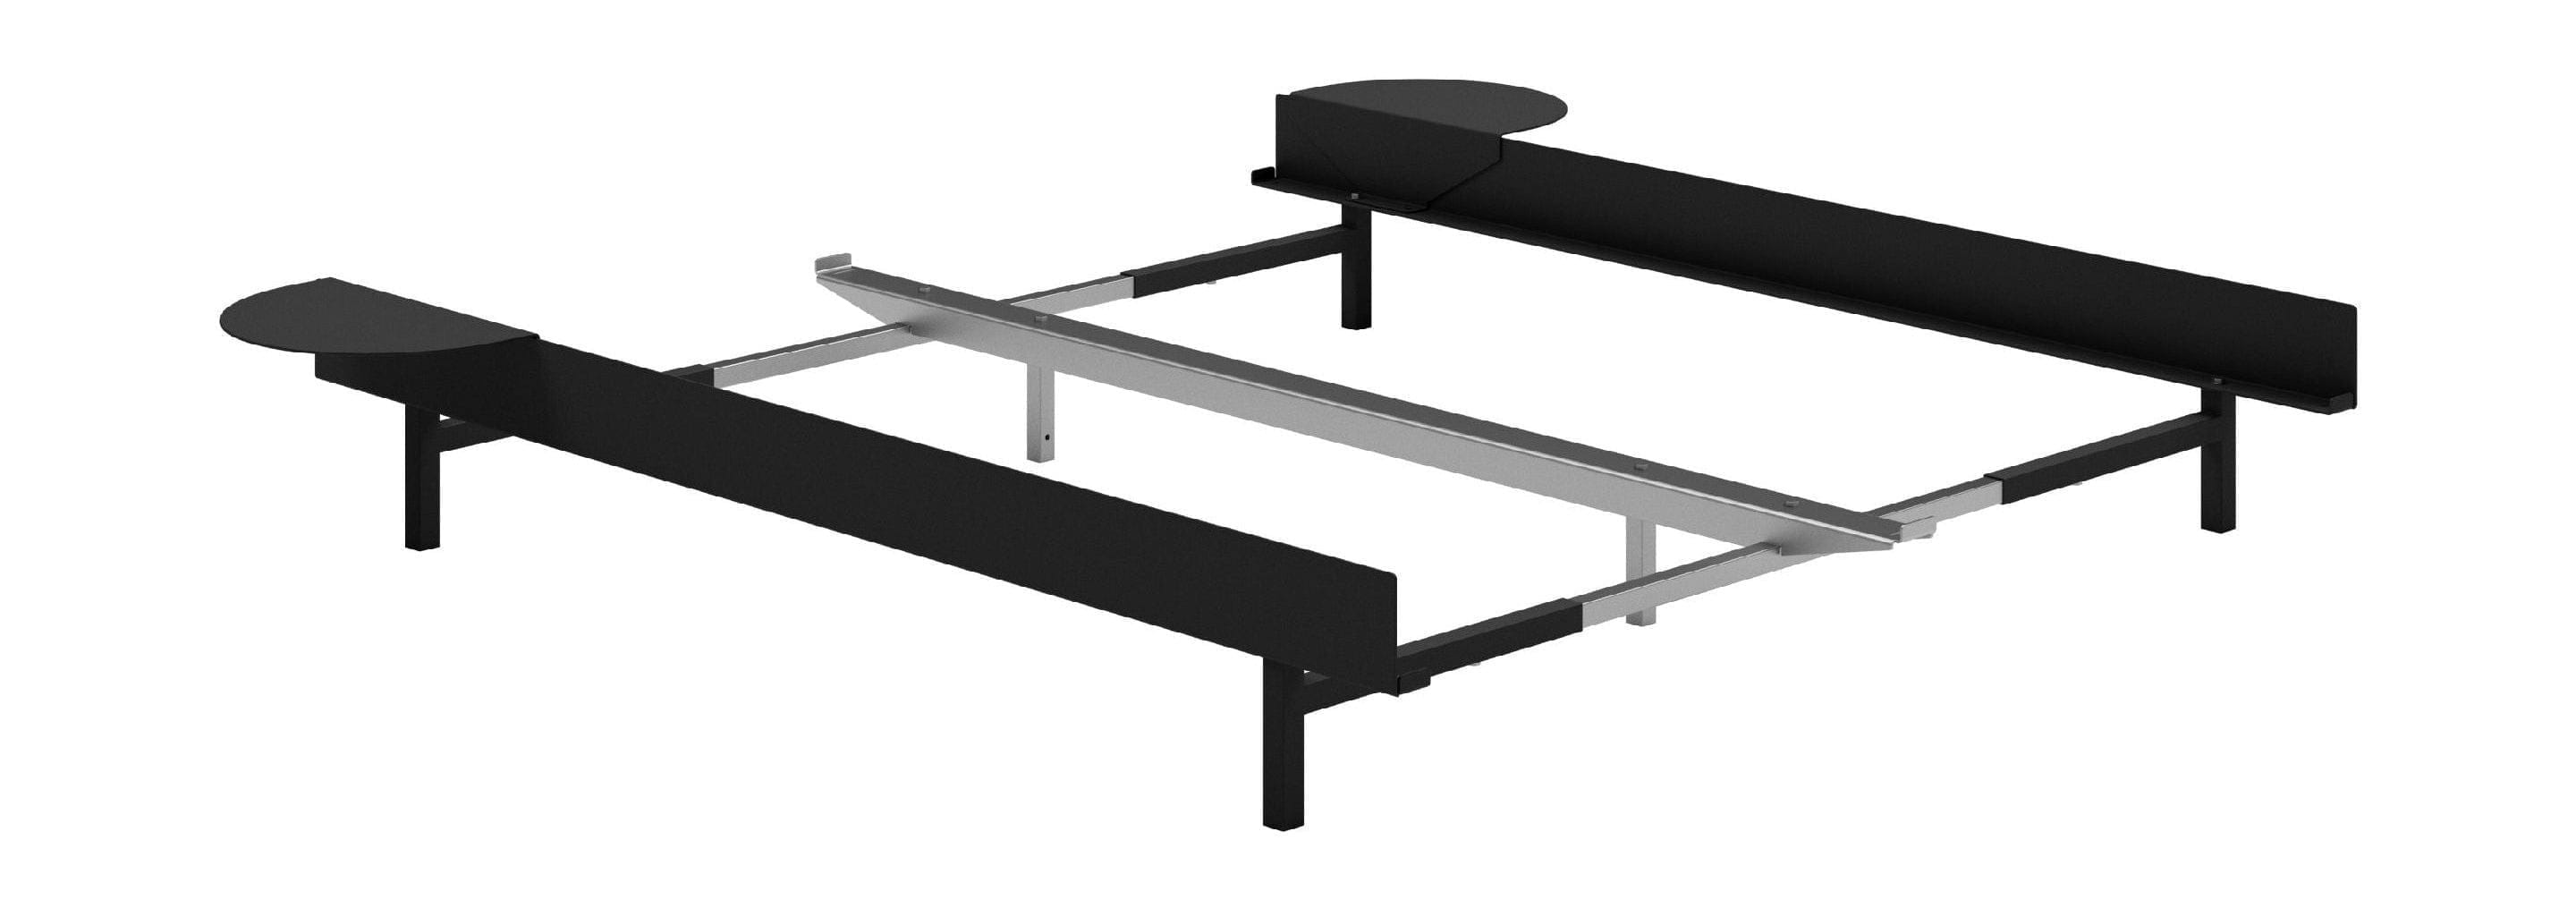 Moebe -säng med 2 sängbord 90 180 cm, svart